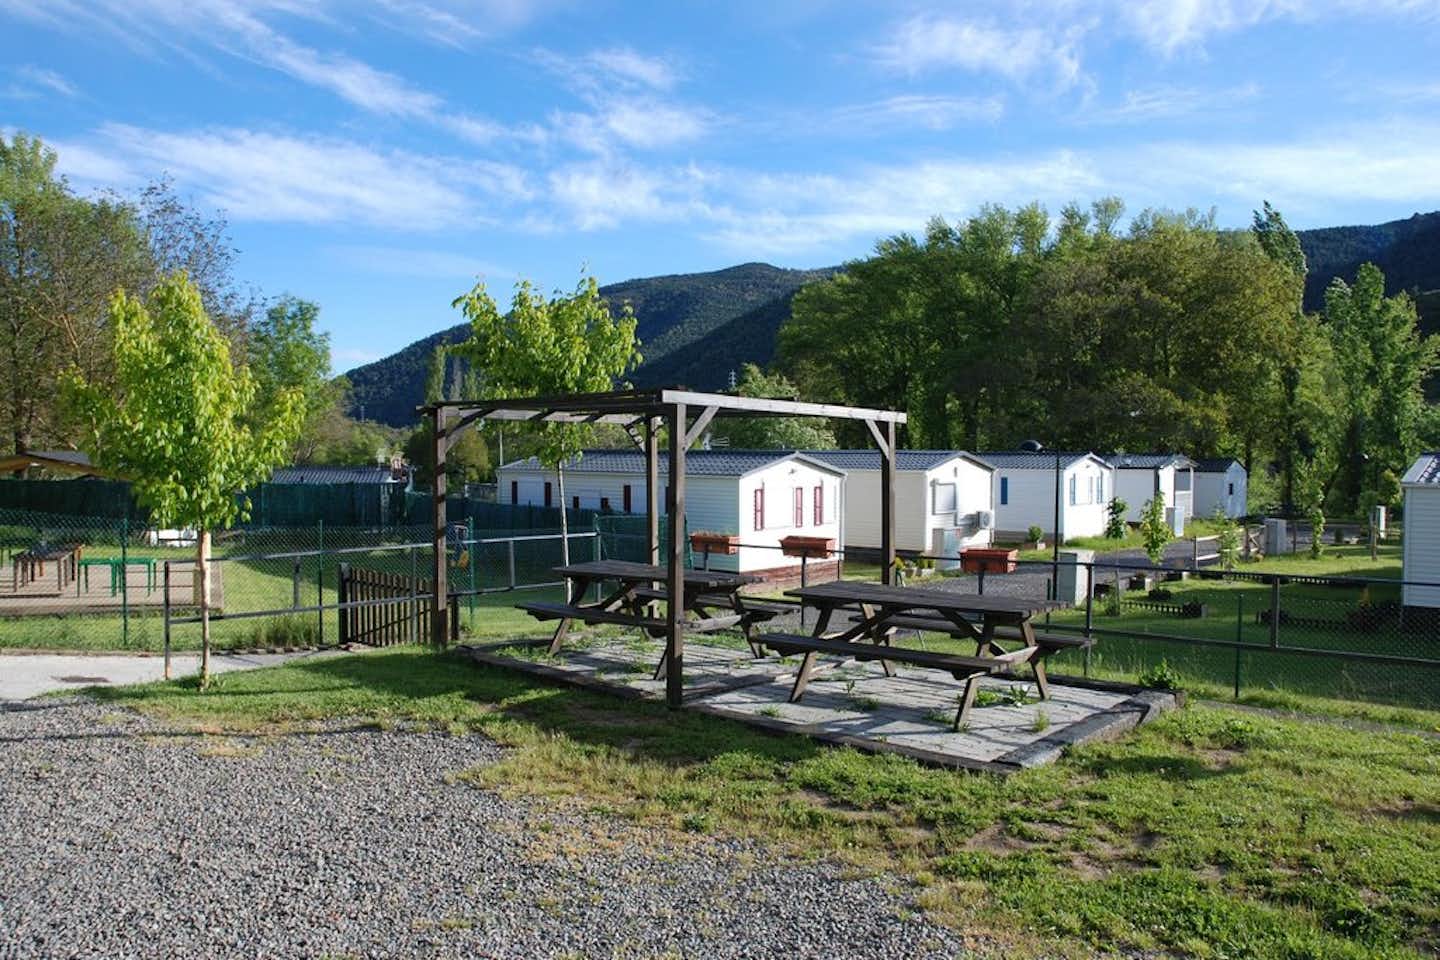 Camping Solopuent - Sitzgelegenheiten auf dem Campingplatz mit Mobilheimen im Hintergrund